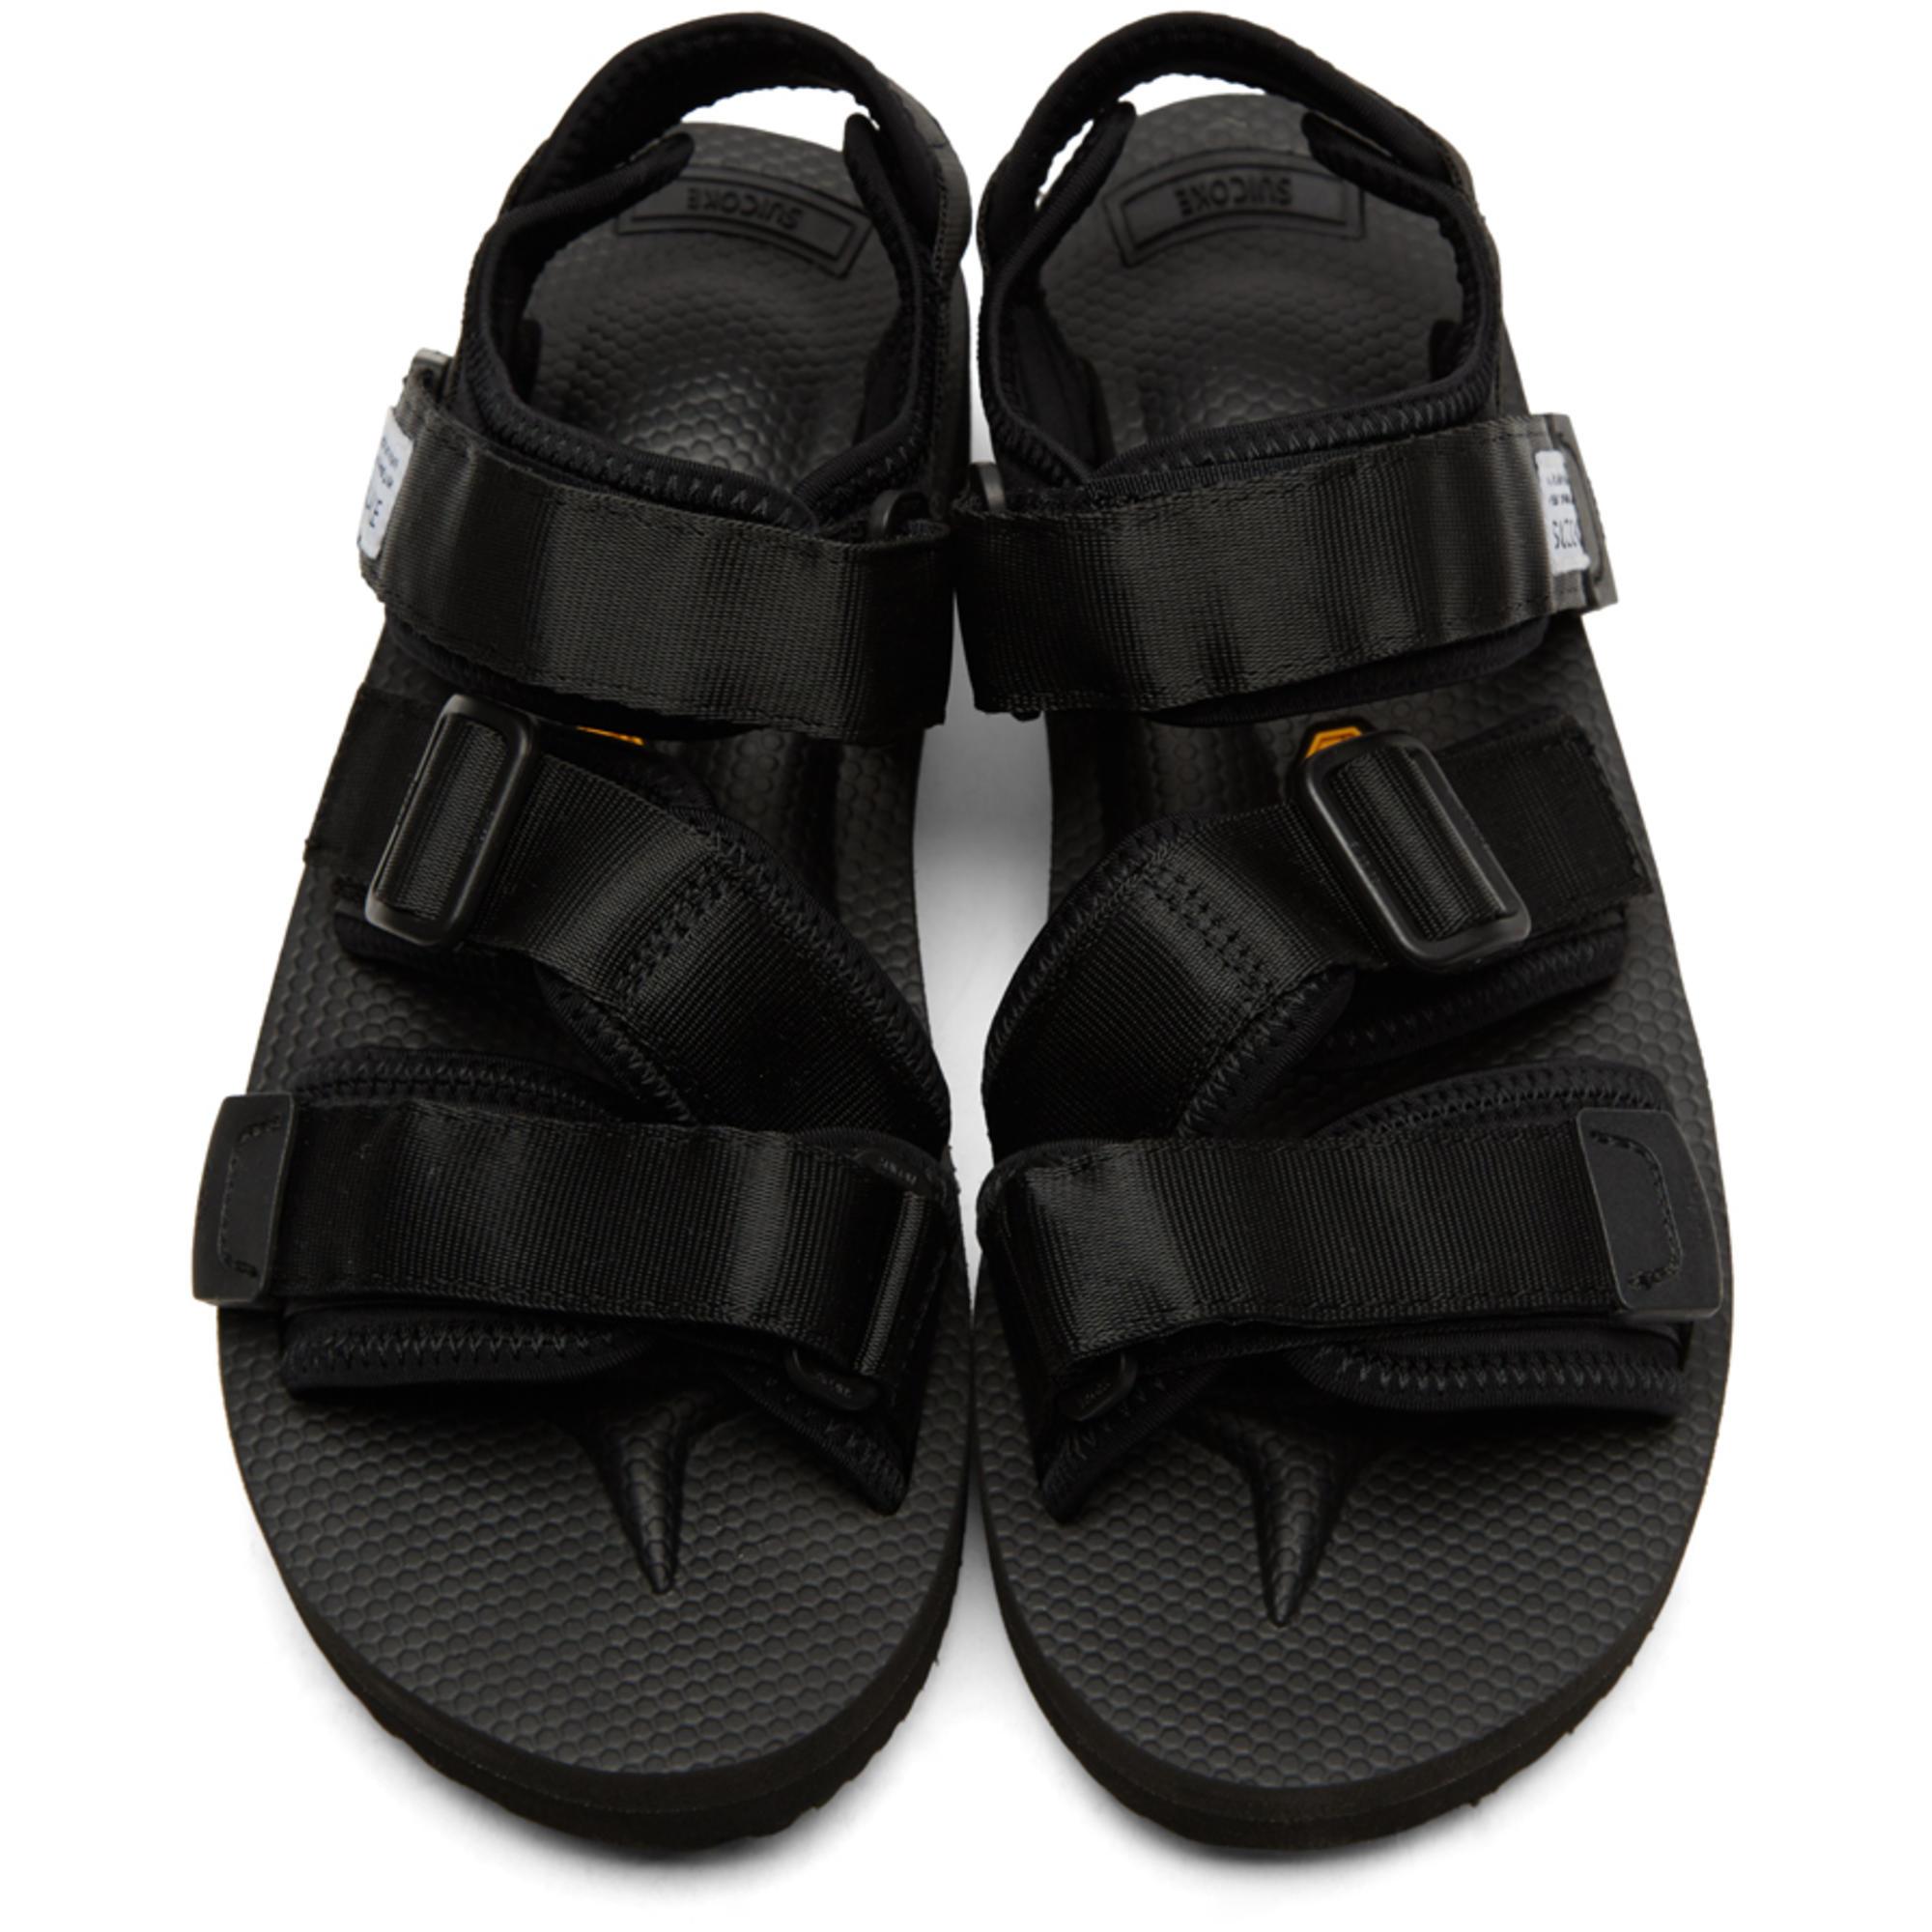 Lyst - Suicoke Black Kisee Sandals in Black for Men